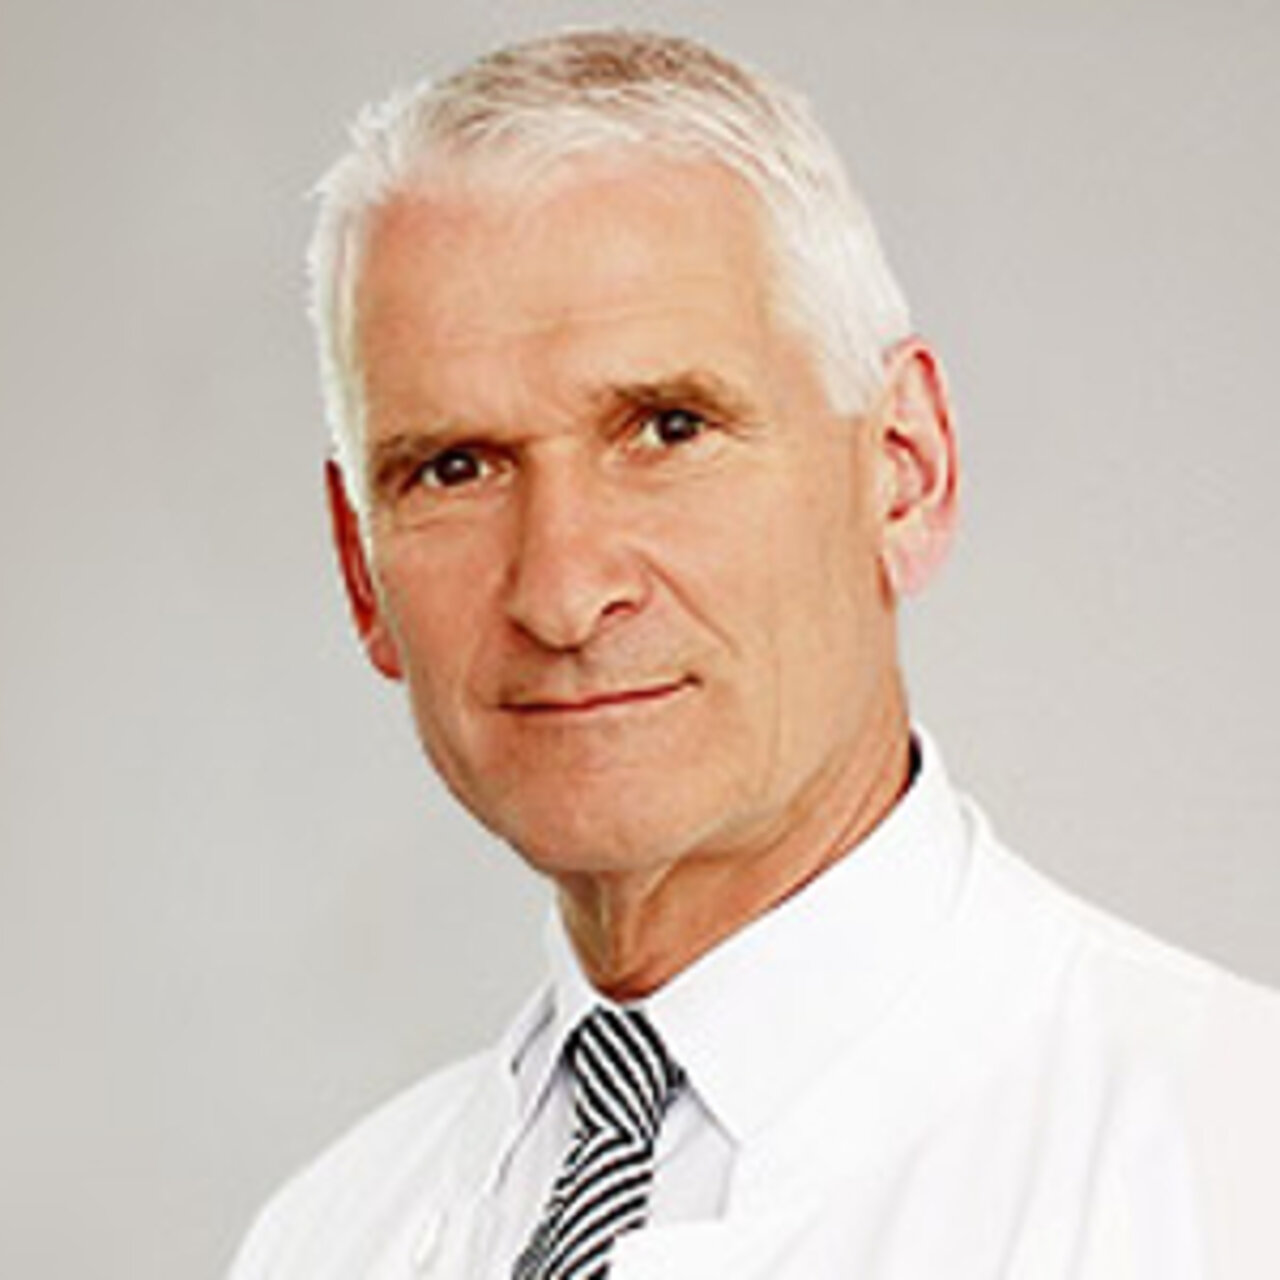 Prof. Dr. med. Harms - Portrait